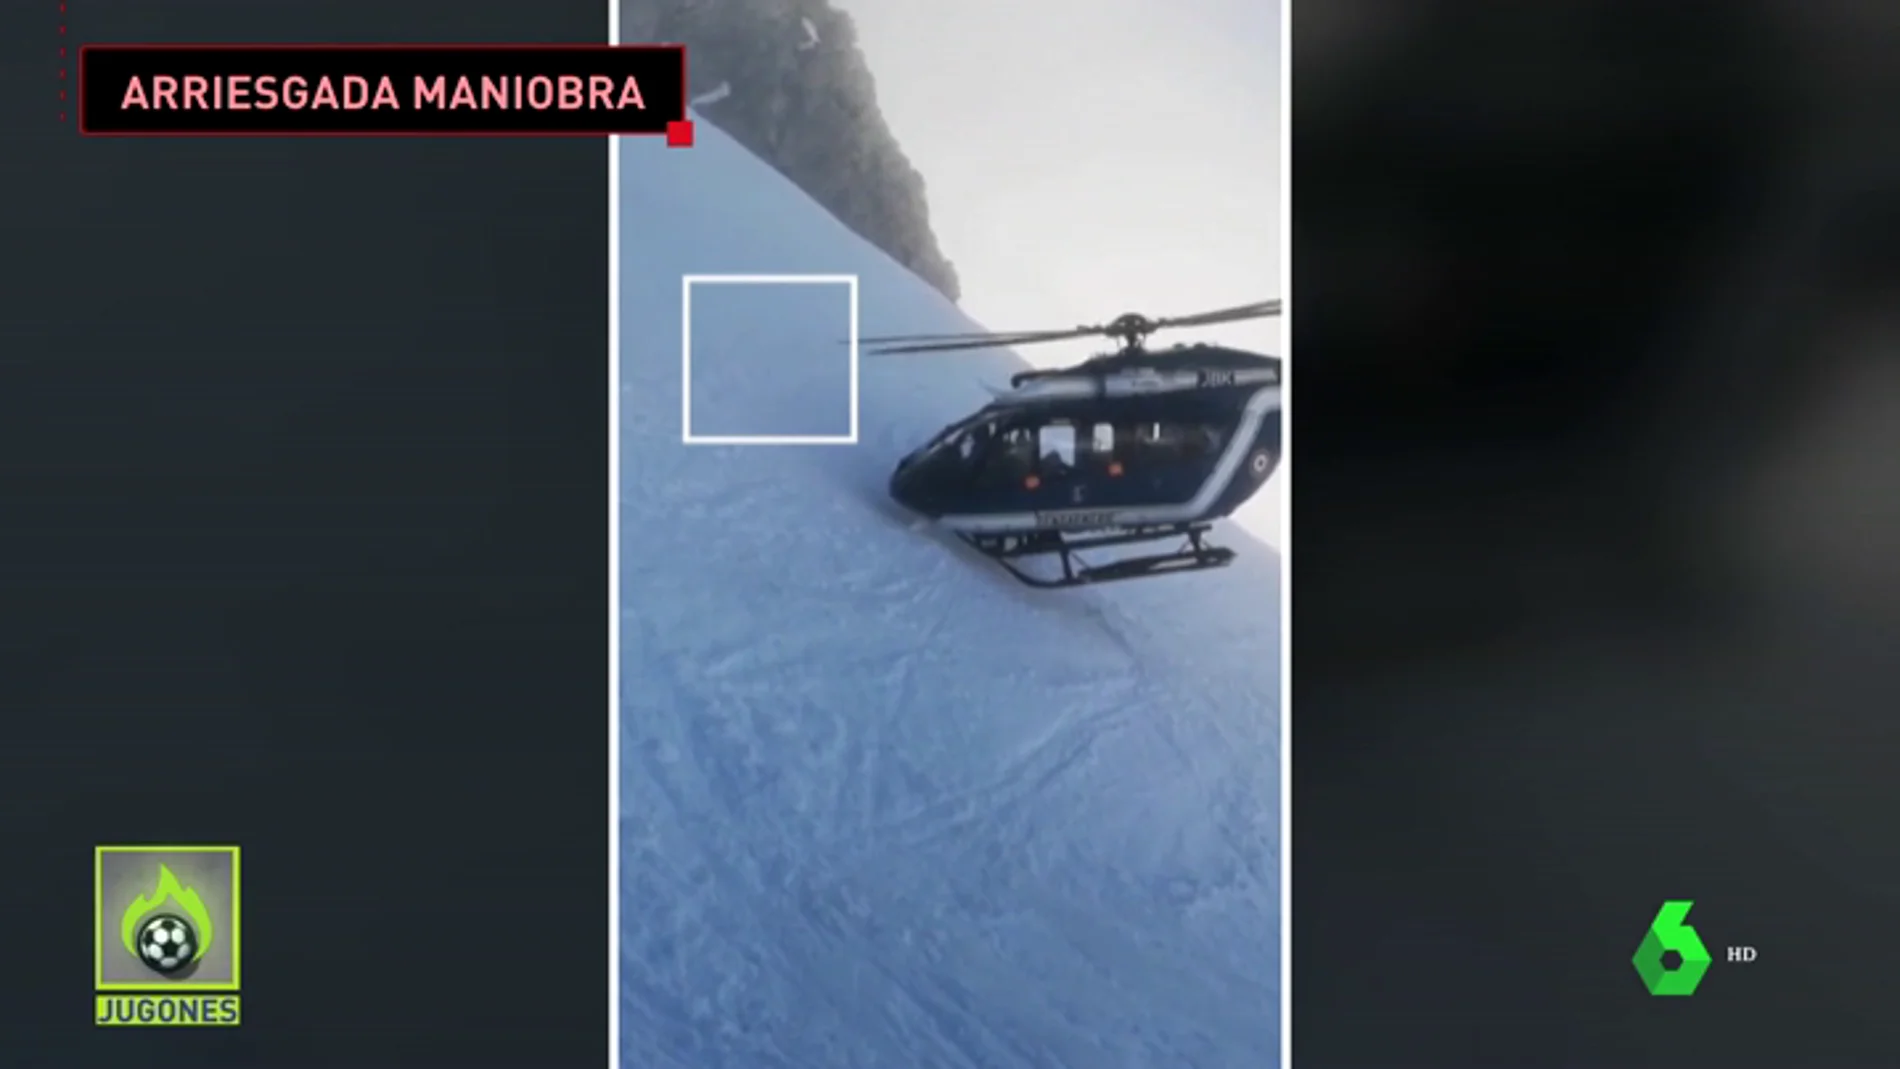 Habla el piloto del helicóptero que realizó la espectacular maniobra de rescate: "Se practica regularmente"